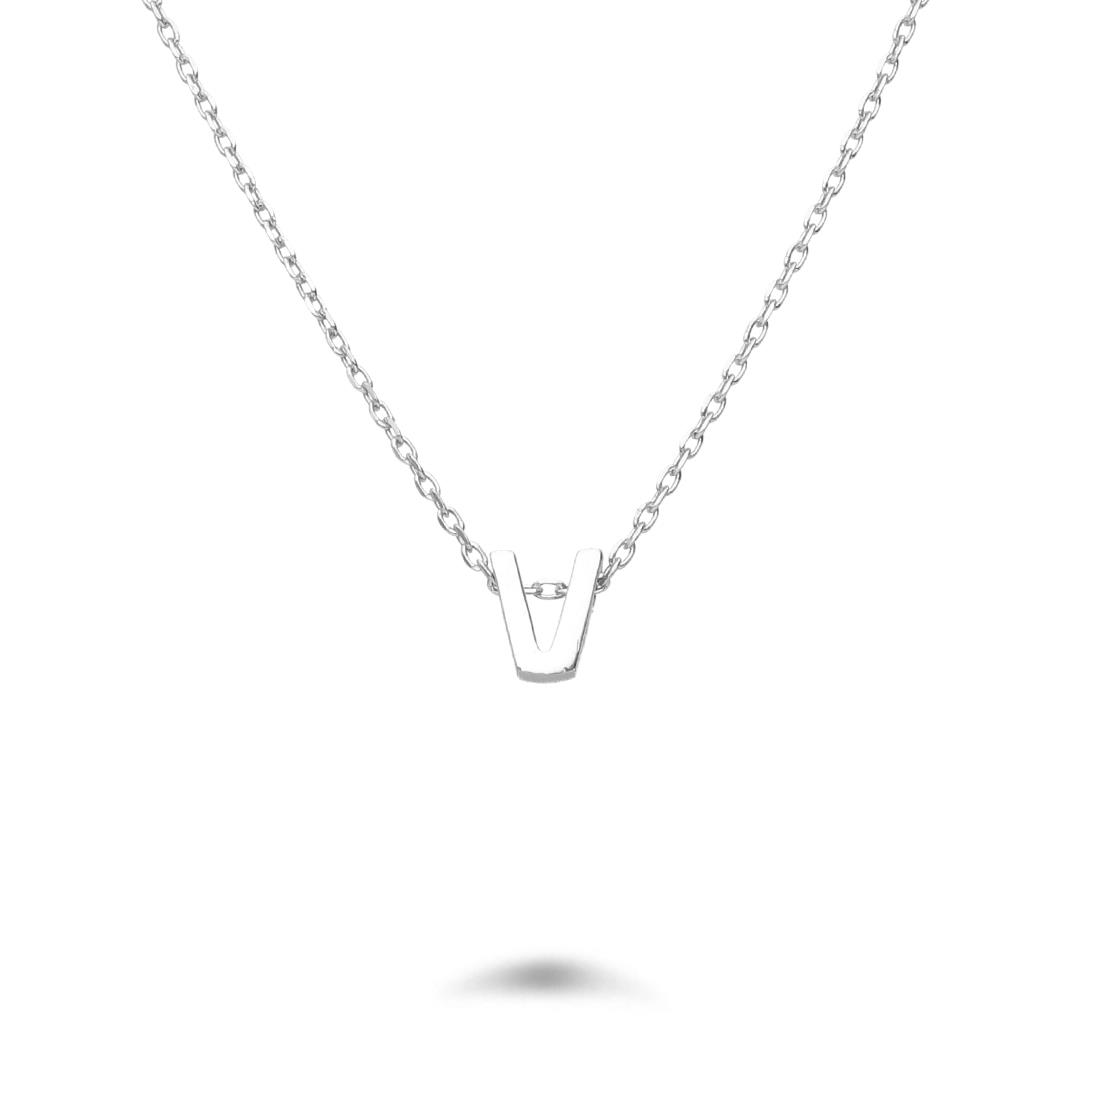 Rolò necklace in rhodium-plated silver with letter V - DESIDERI PREZIOSI